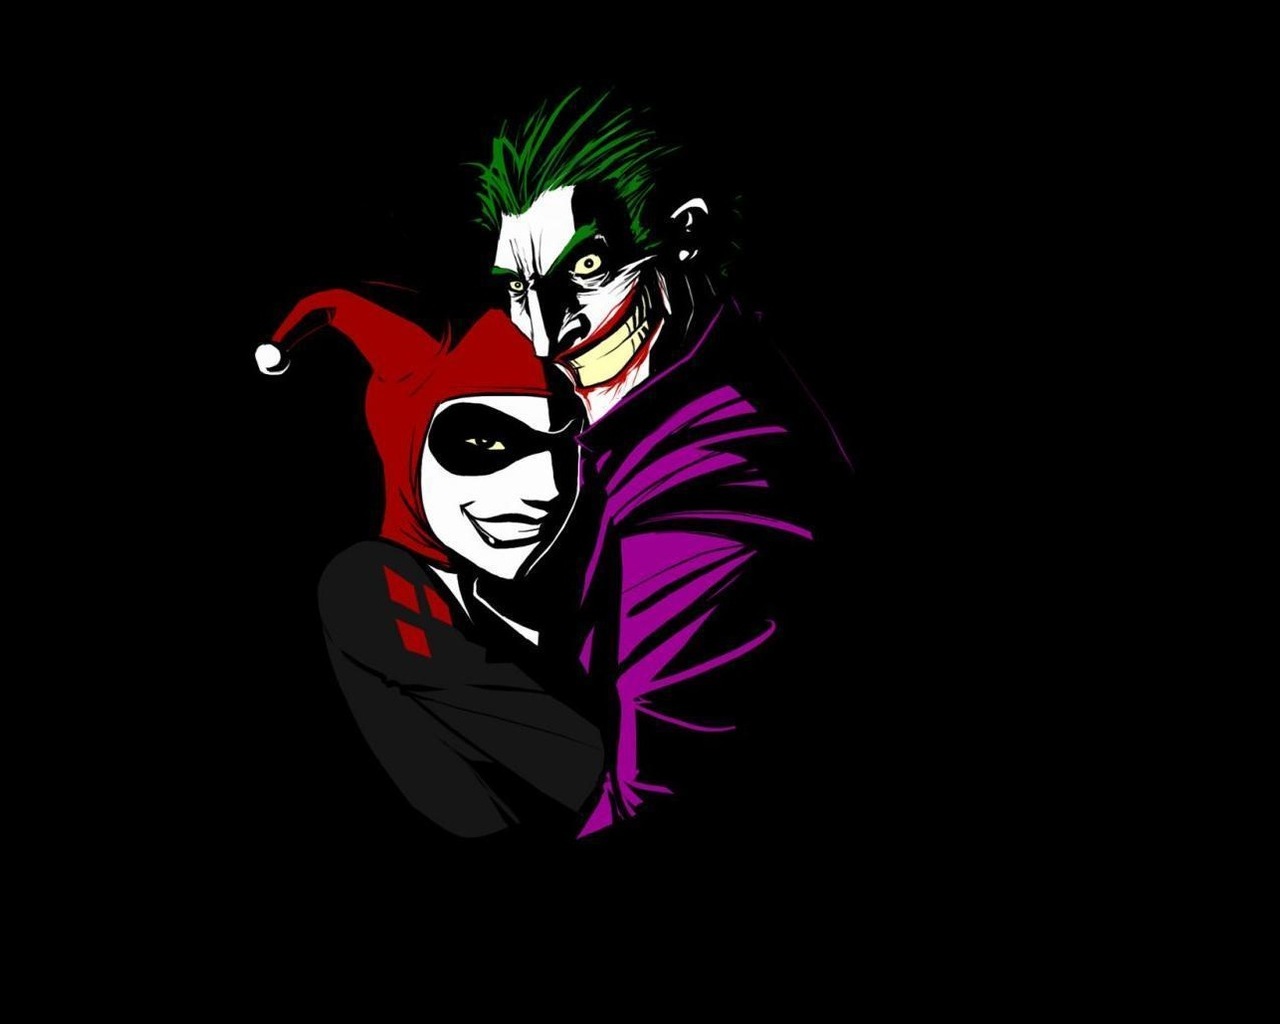 Download Wallpaper Joker 3d Image Num 22